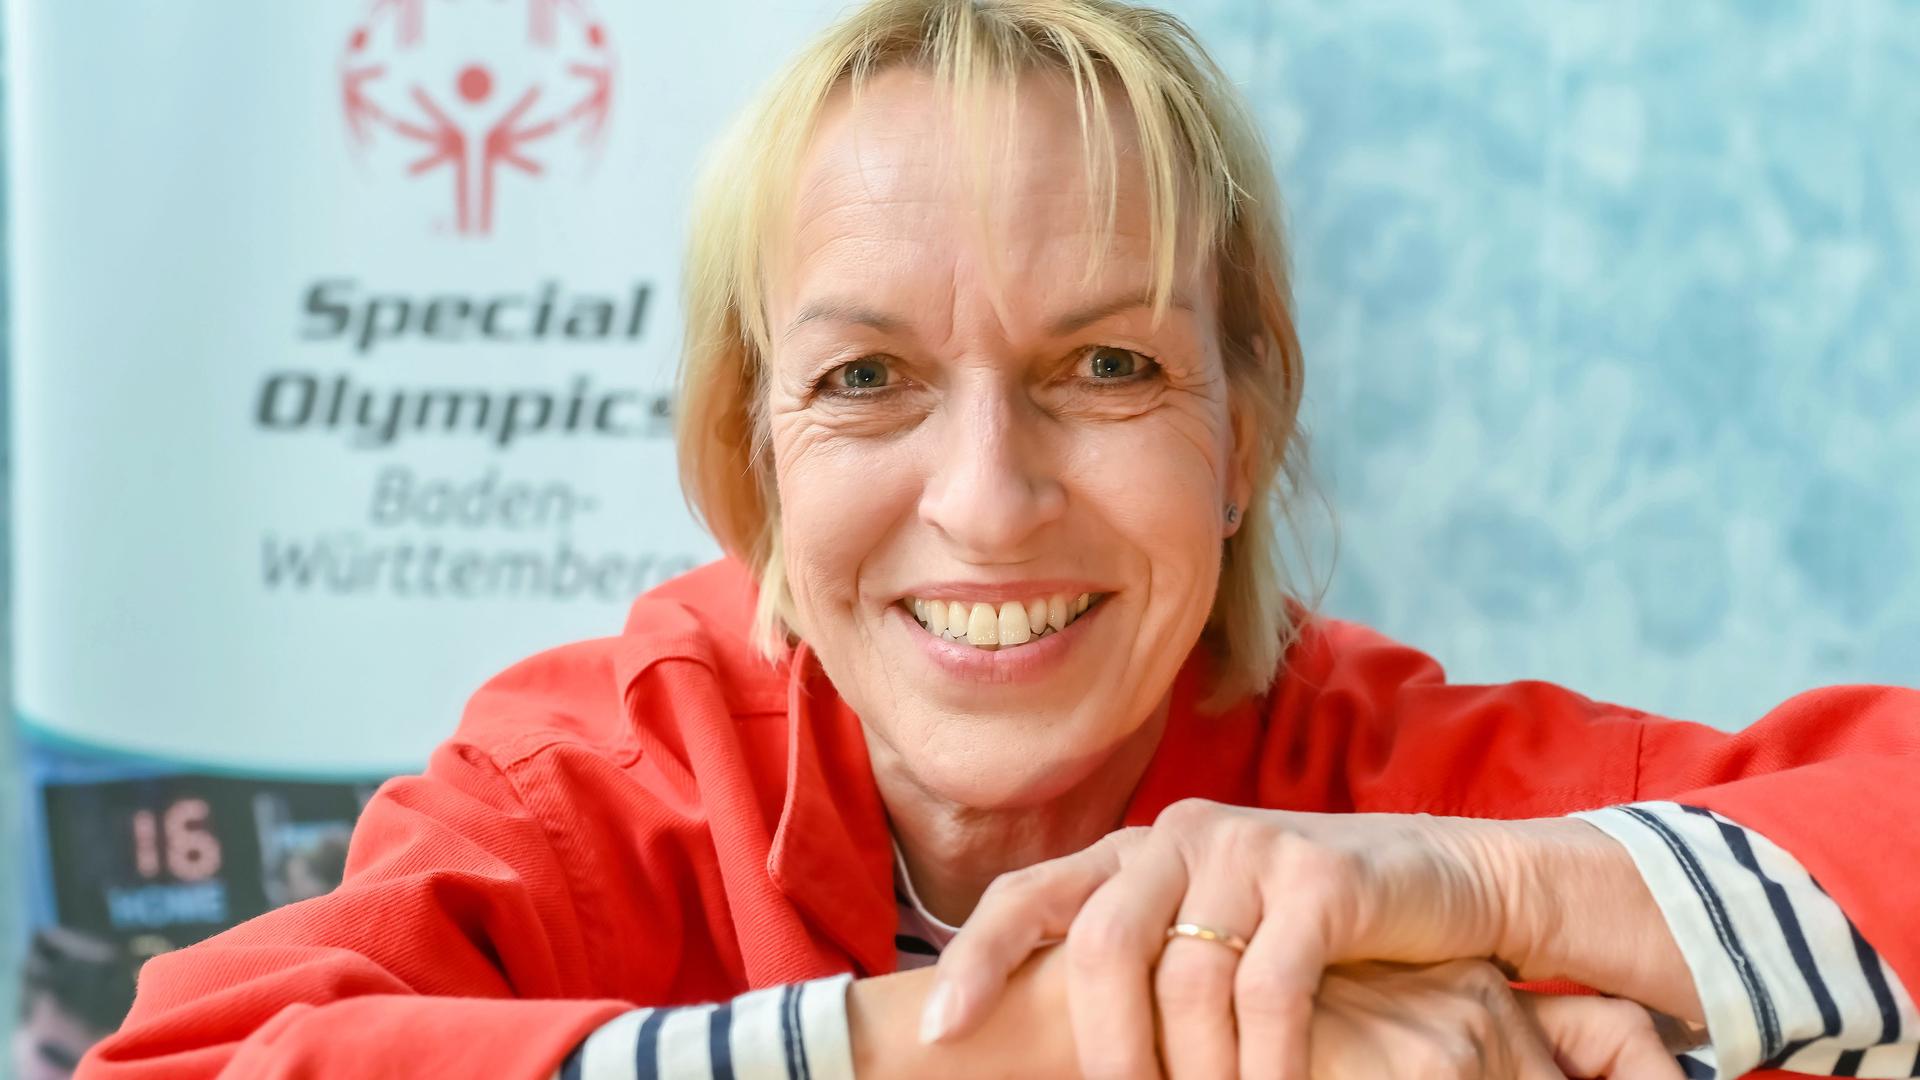 Früher war sie eine erfolgreiche Leichtathletin, inzwischen ist sie als Funktionärin tätig: Beate Slavetinsky war Vorsitzende des Organisationskomitees bei den im Sommer 2022 ausgetragenen baden-württembergischen Landesspielen der Special Olympics in Mannheim. 